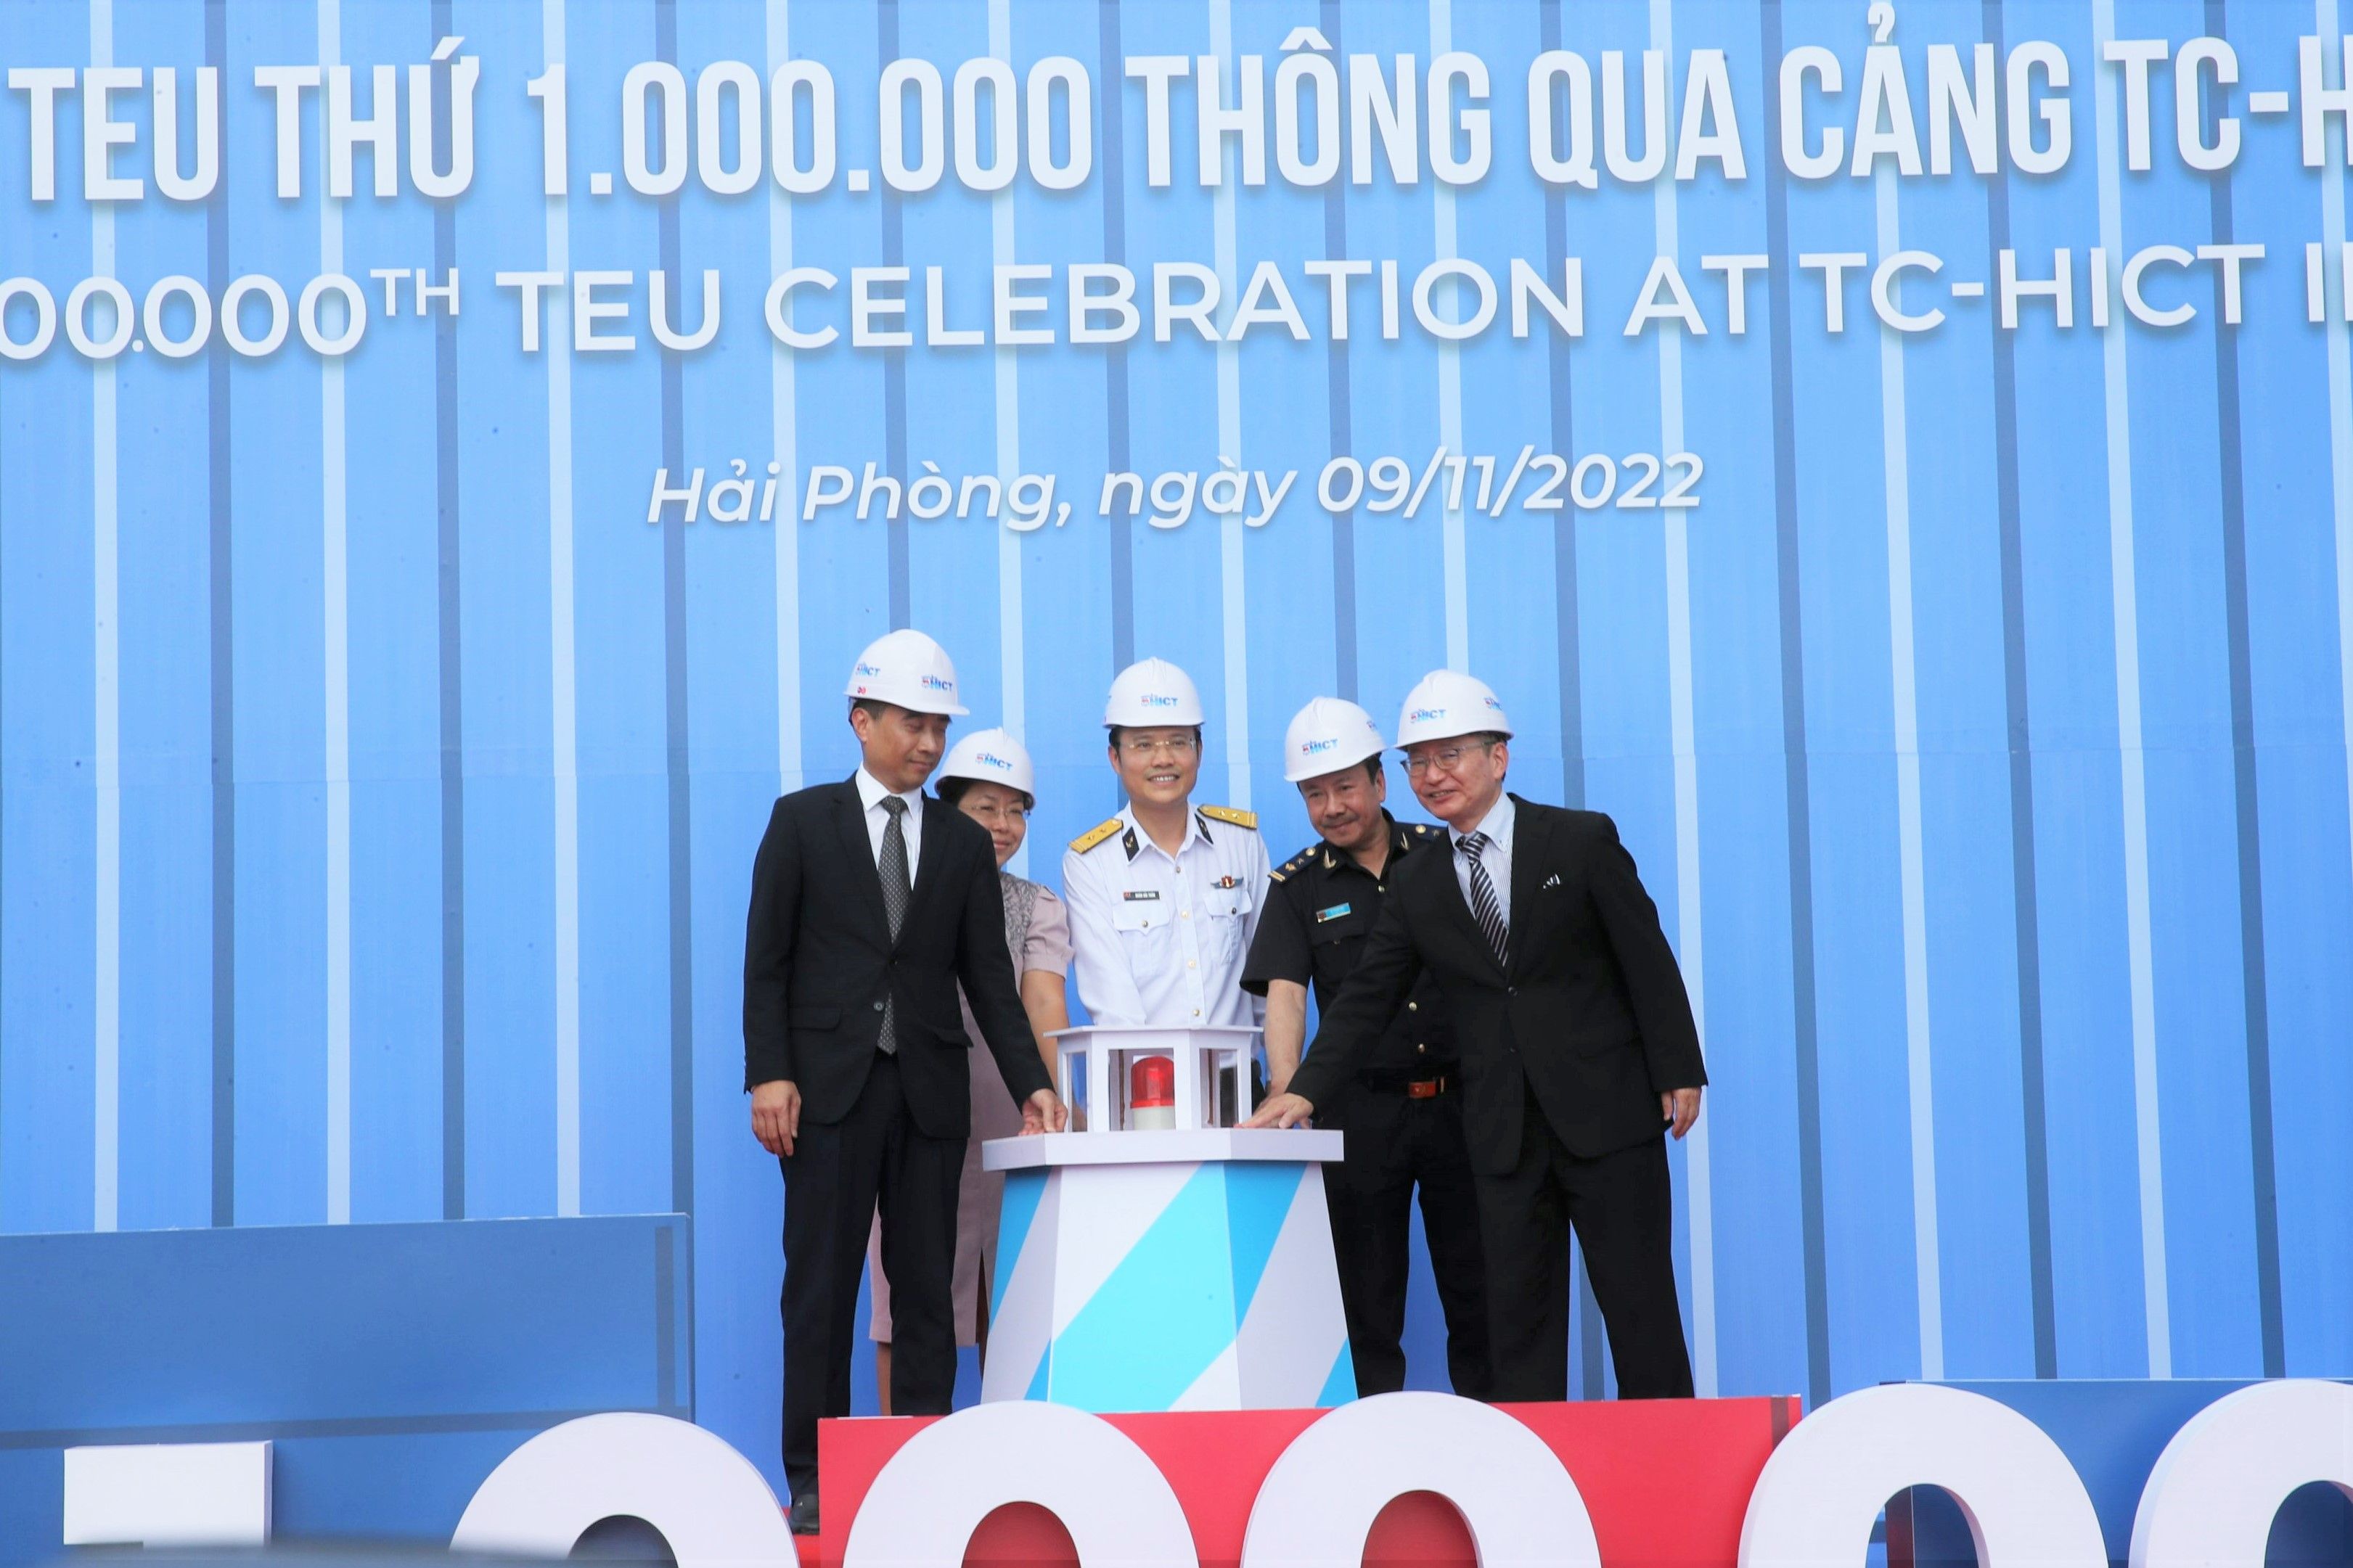 Các đại biểu ấn nút phát lệnh làm hàng đón Teu thứ 1 triệu qua cảng TC-HICT 2022